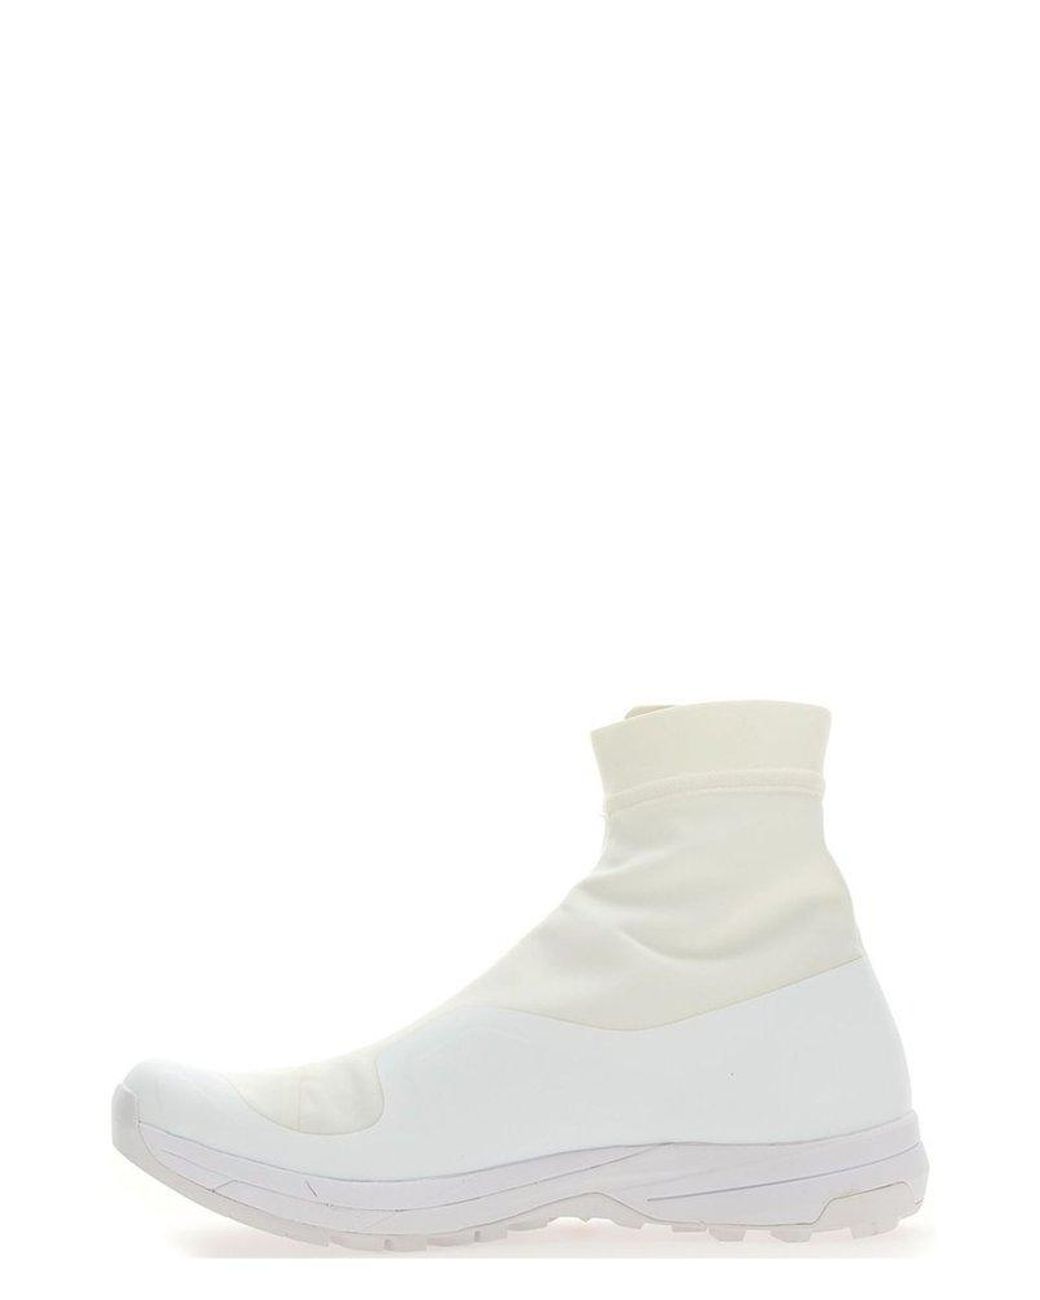 Comme des Garçons X Salomon Xa-alpine 2 Boots in White | Lyst